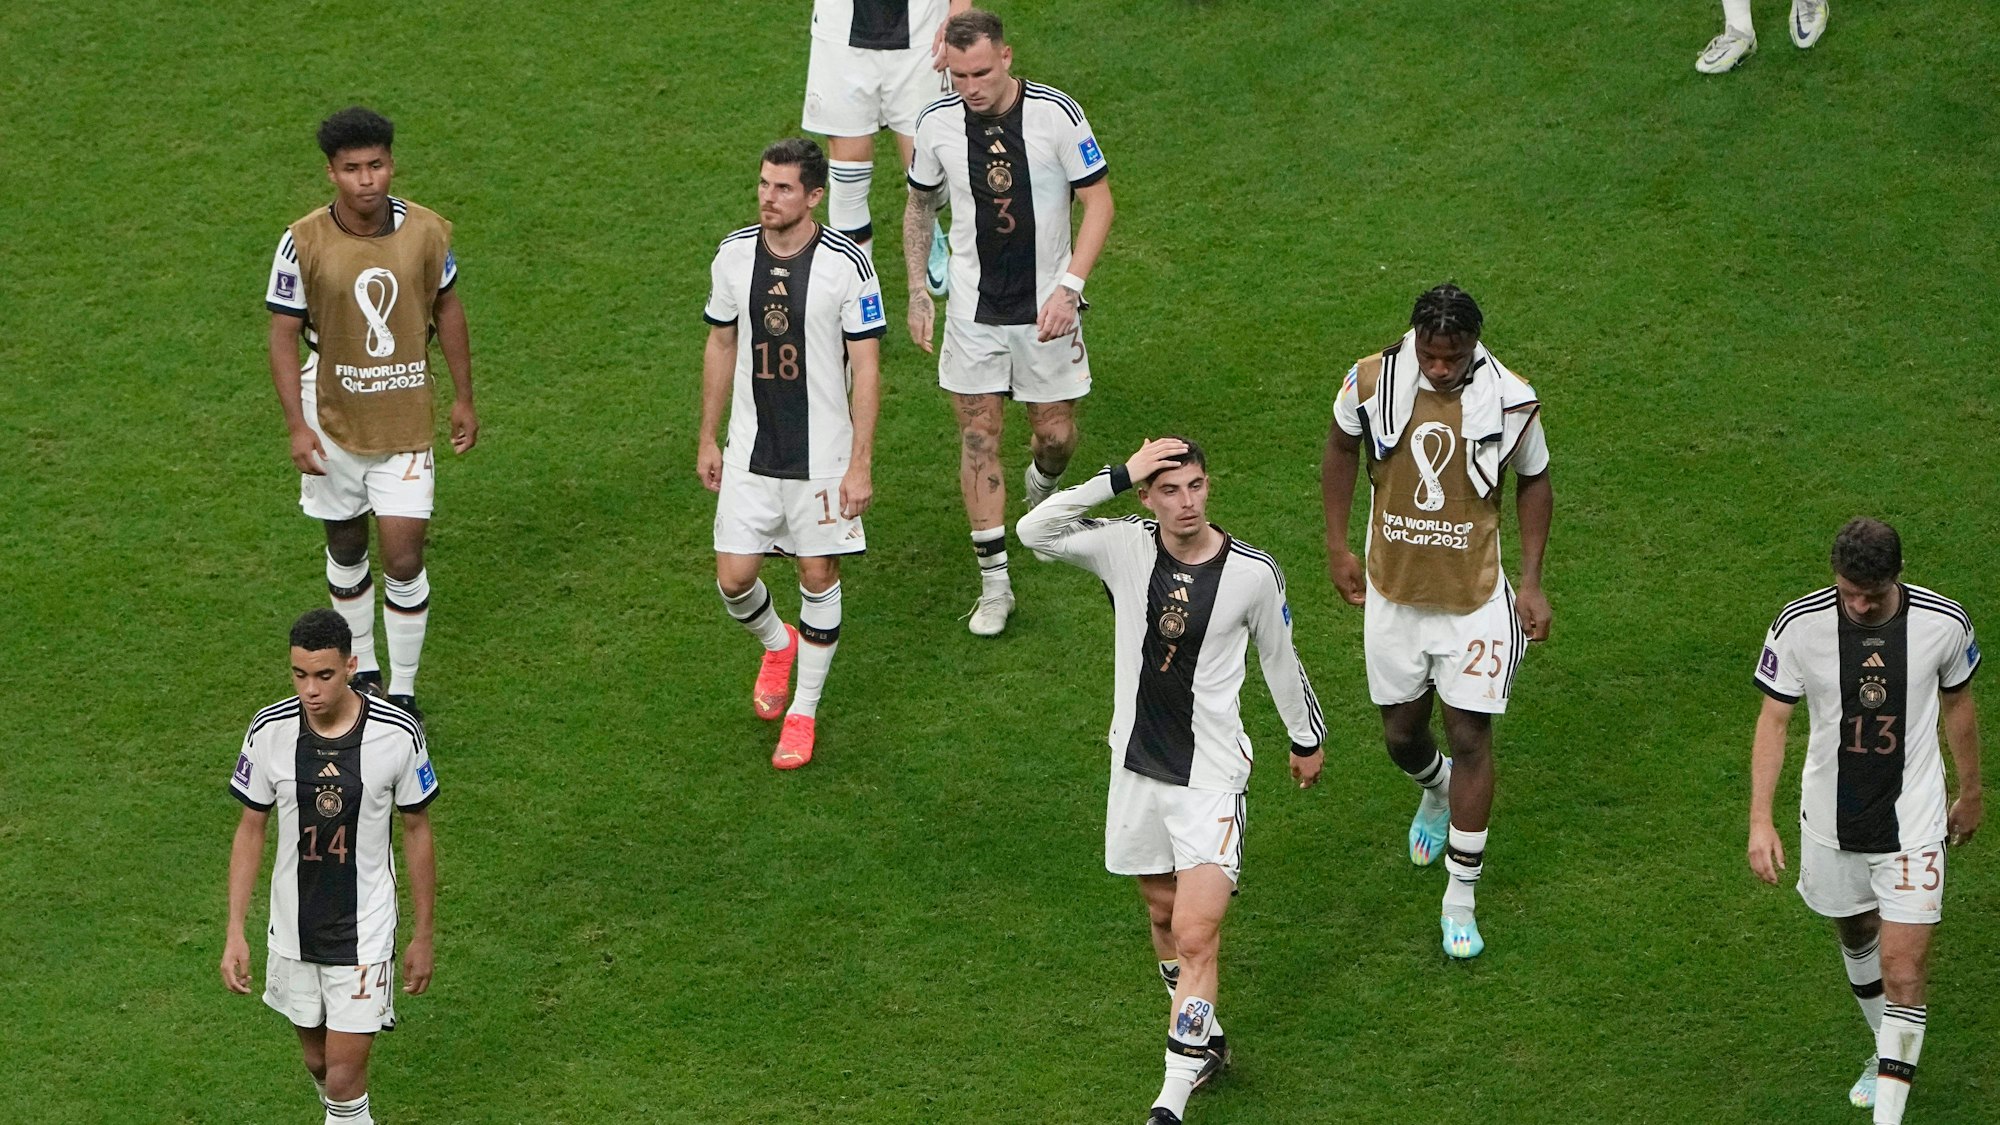 Bitteres Aus: die Spieler der deutschen Mannschaft verlassen nach dem Spiel den Platz.